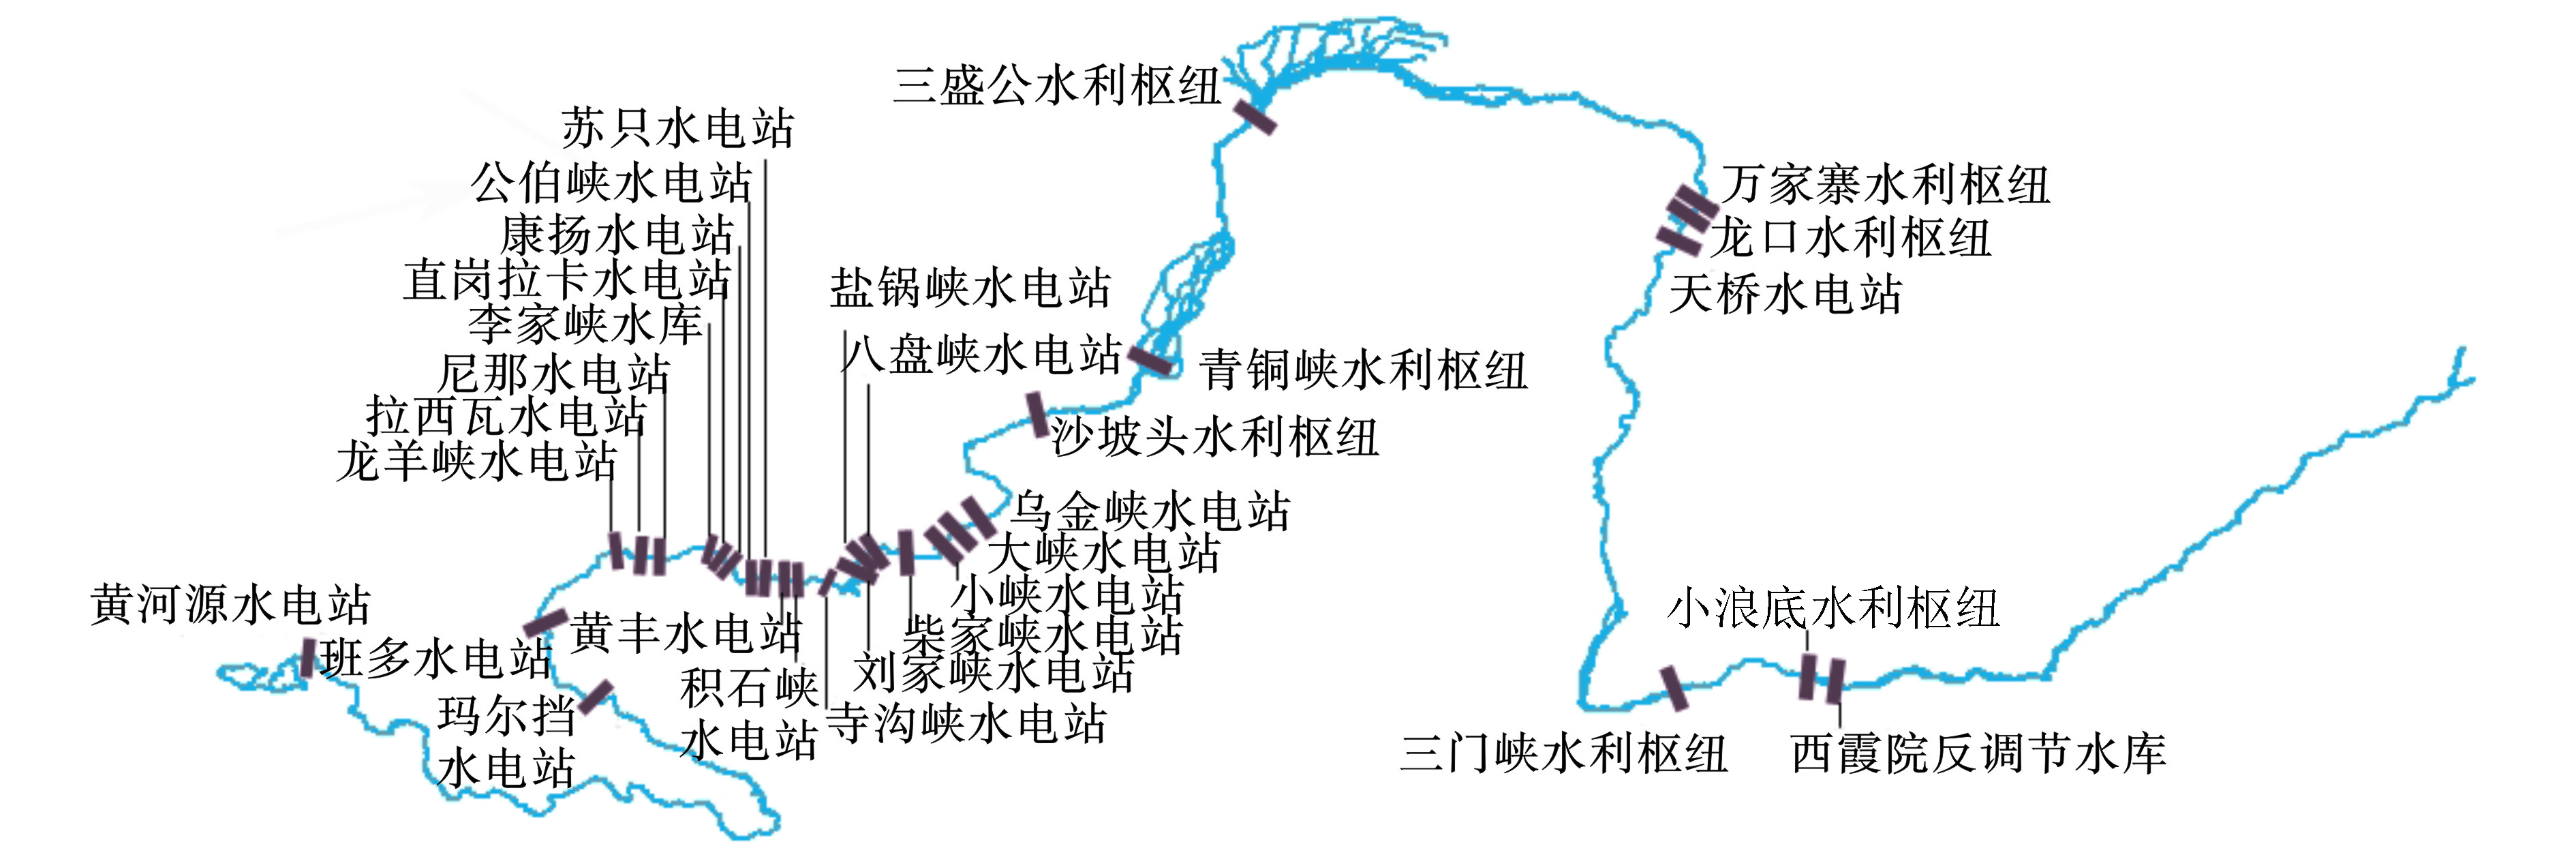 图 1         黄河干流主要水利工程分布